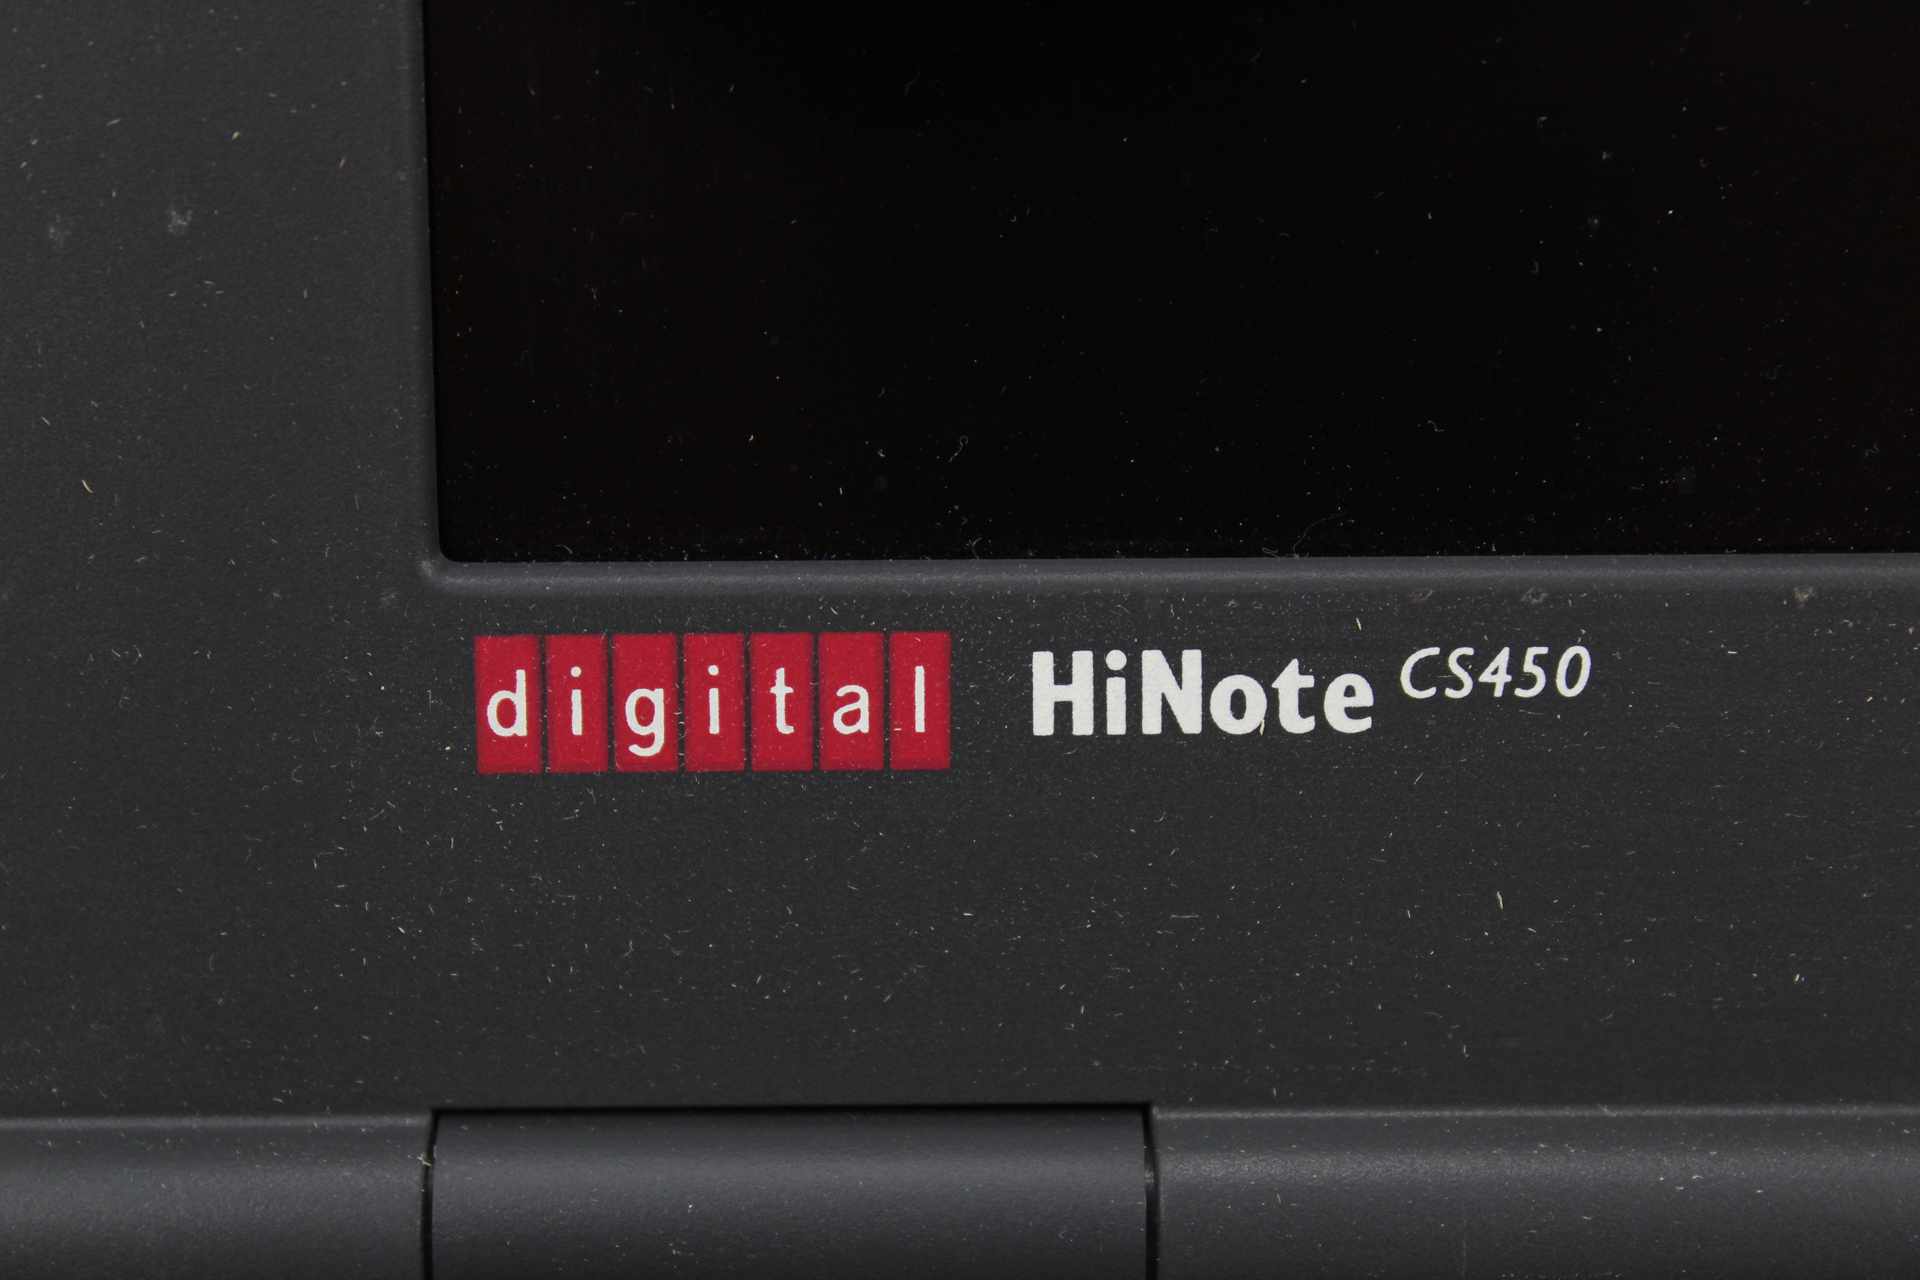 Digital HiNote CS450